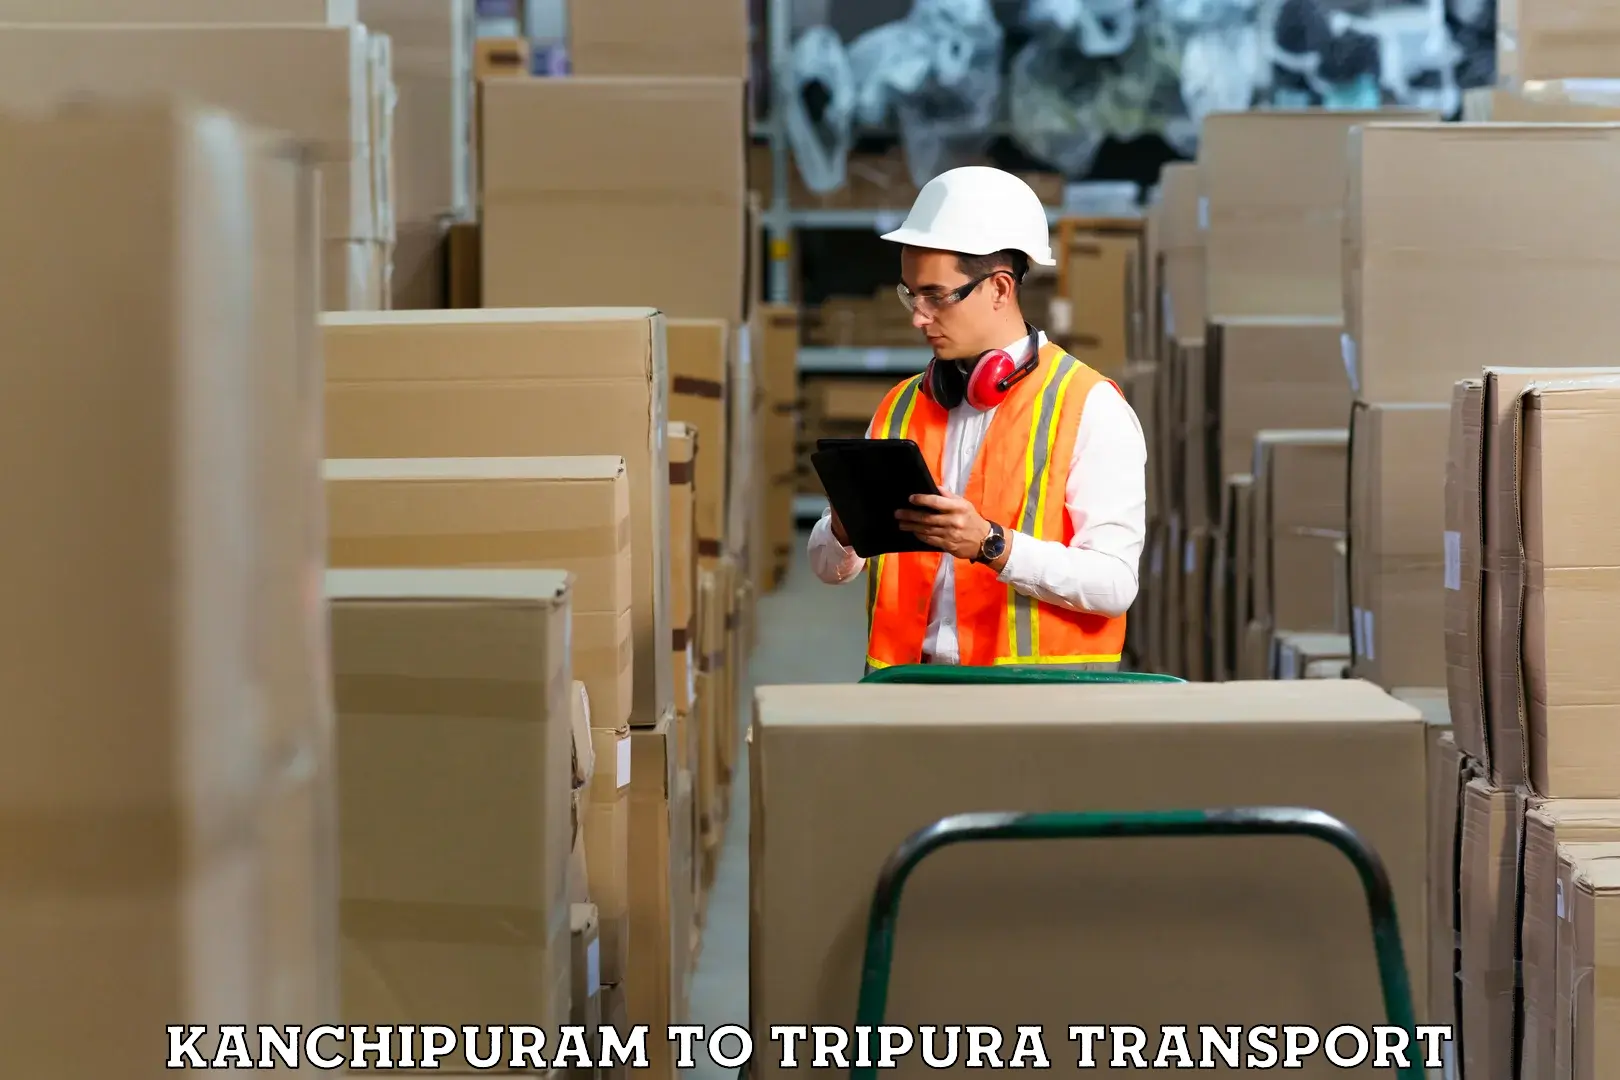 Commercial transport service Kanchipuram to Tripura